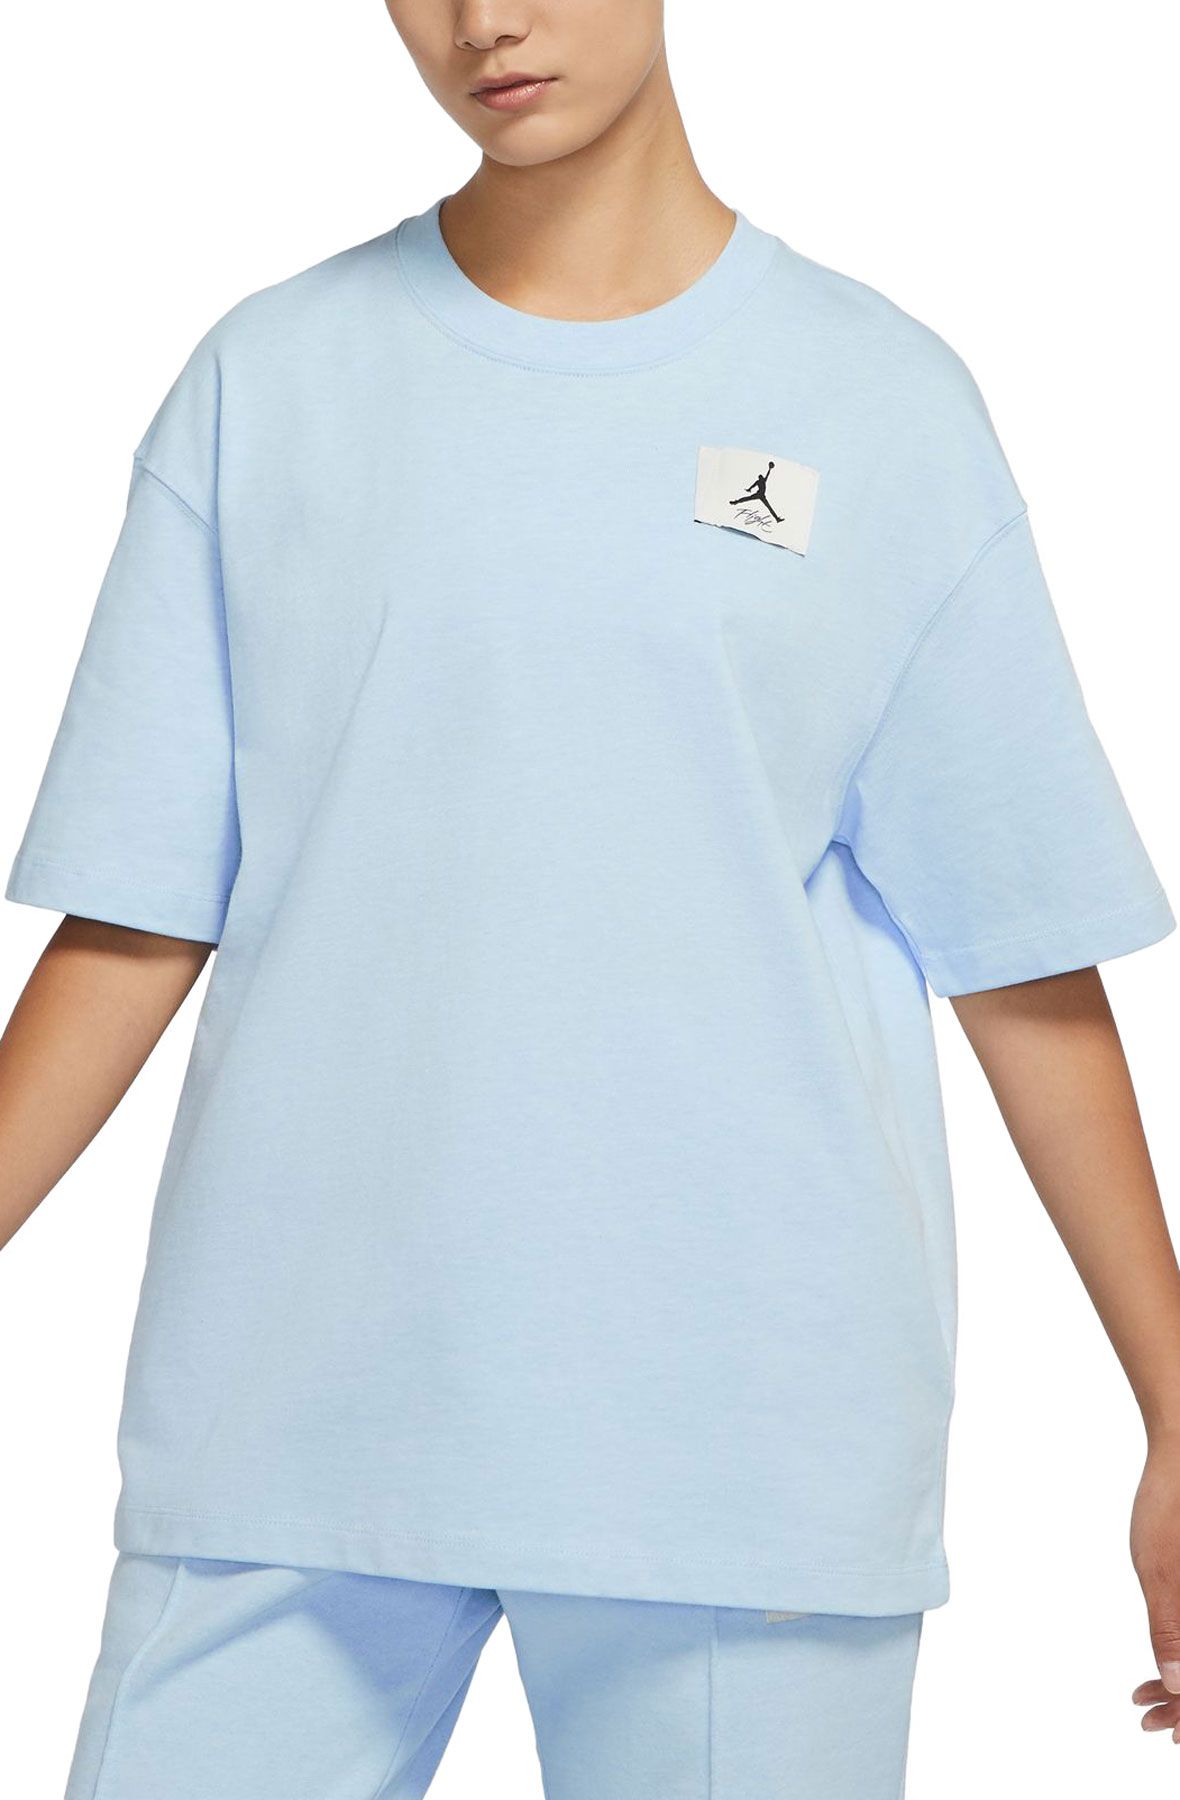 Jordan Blue Shirt 